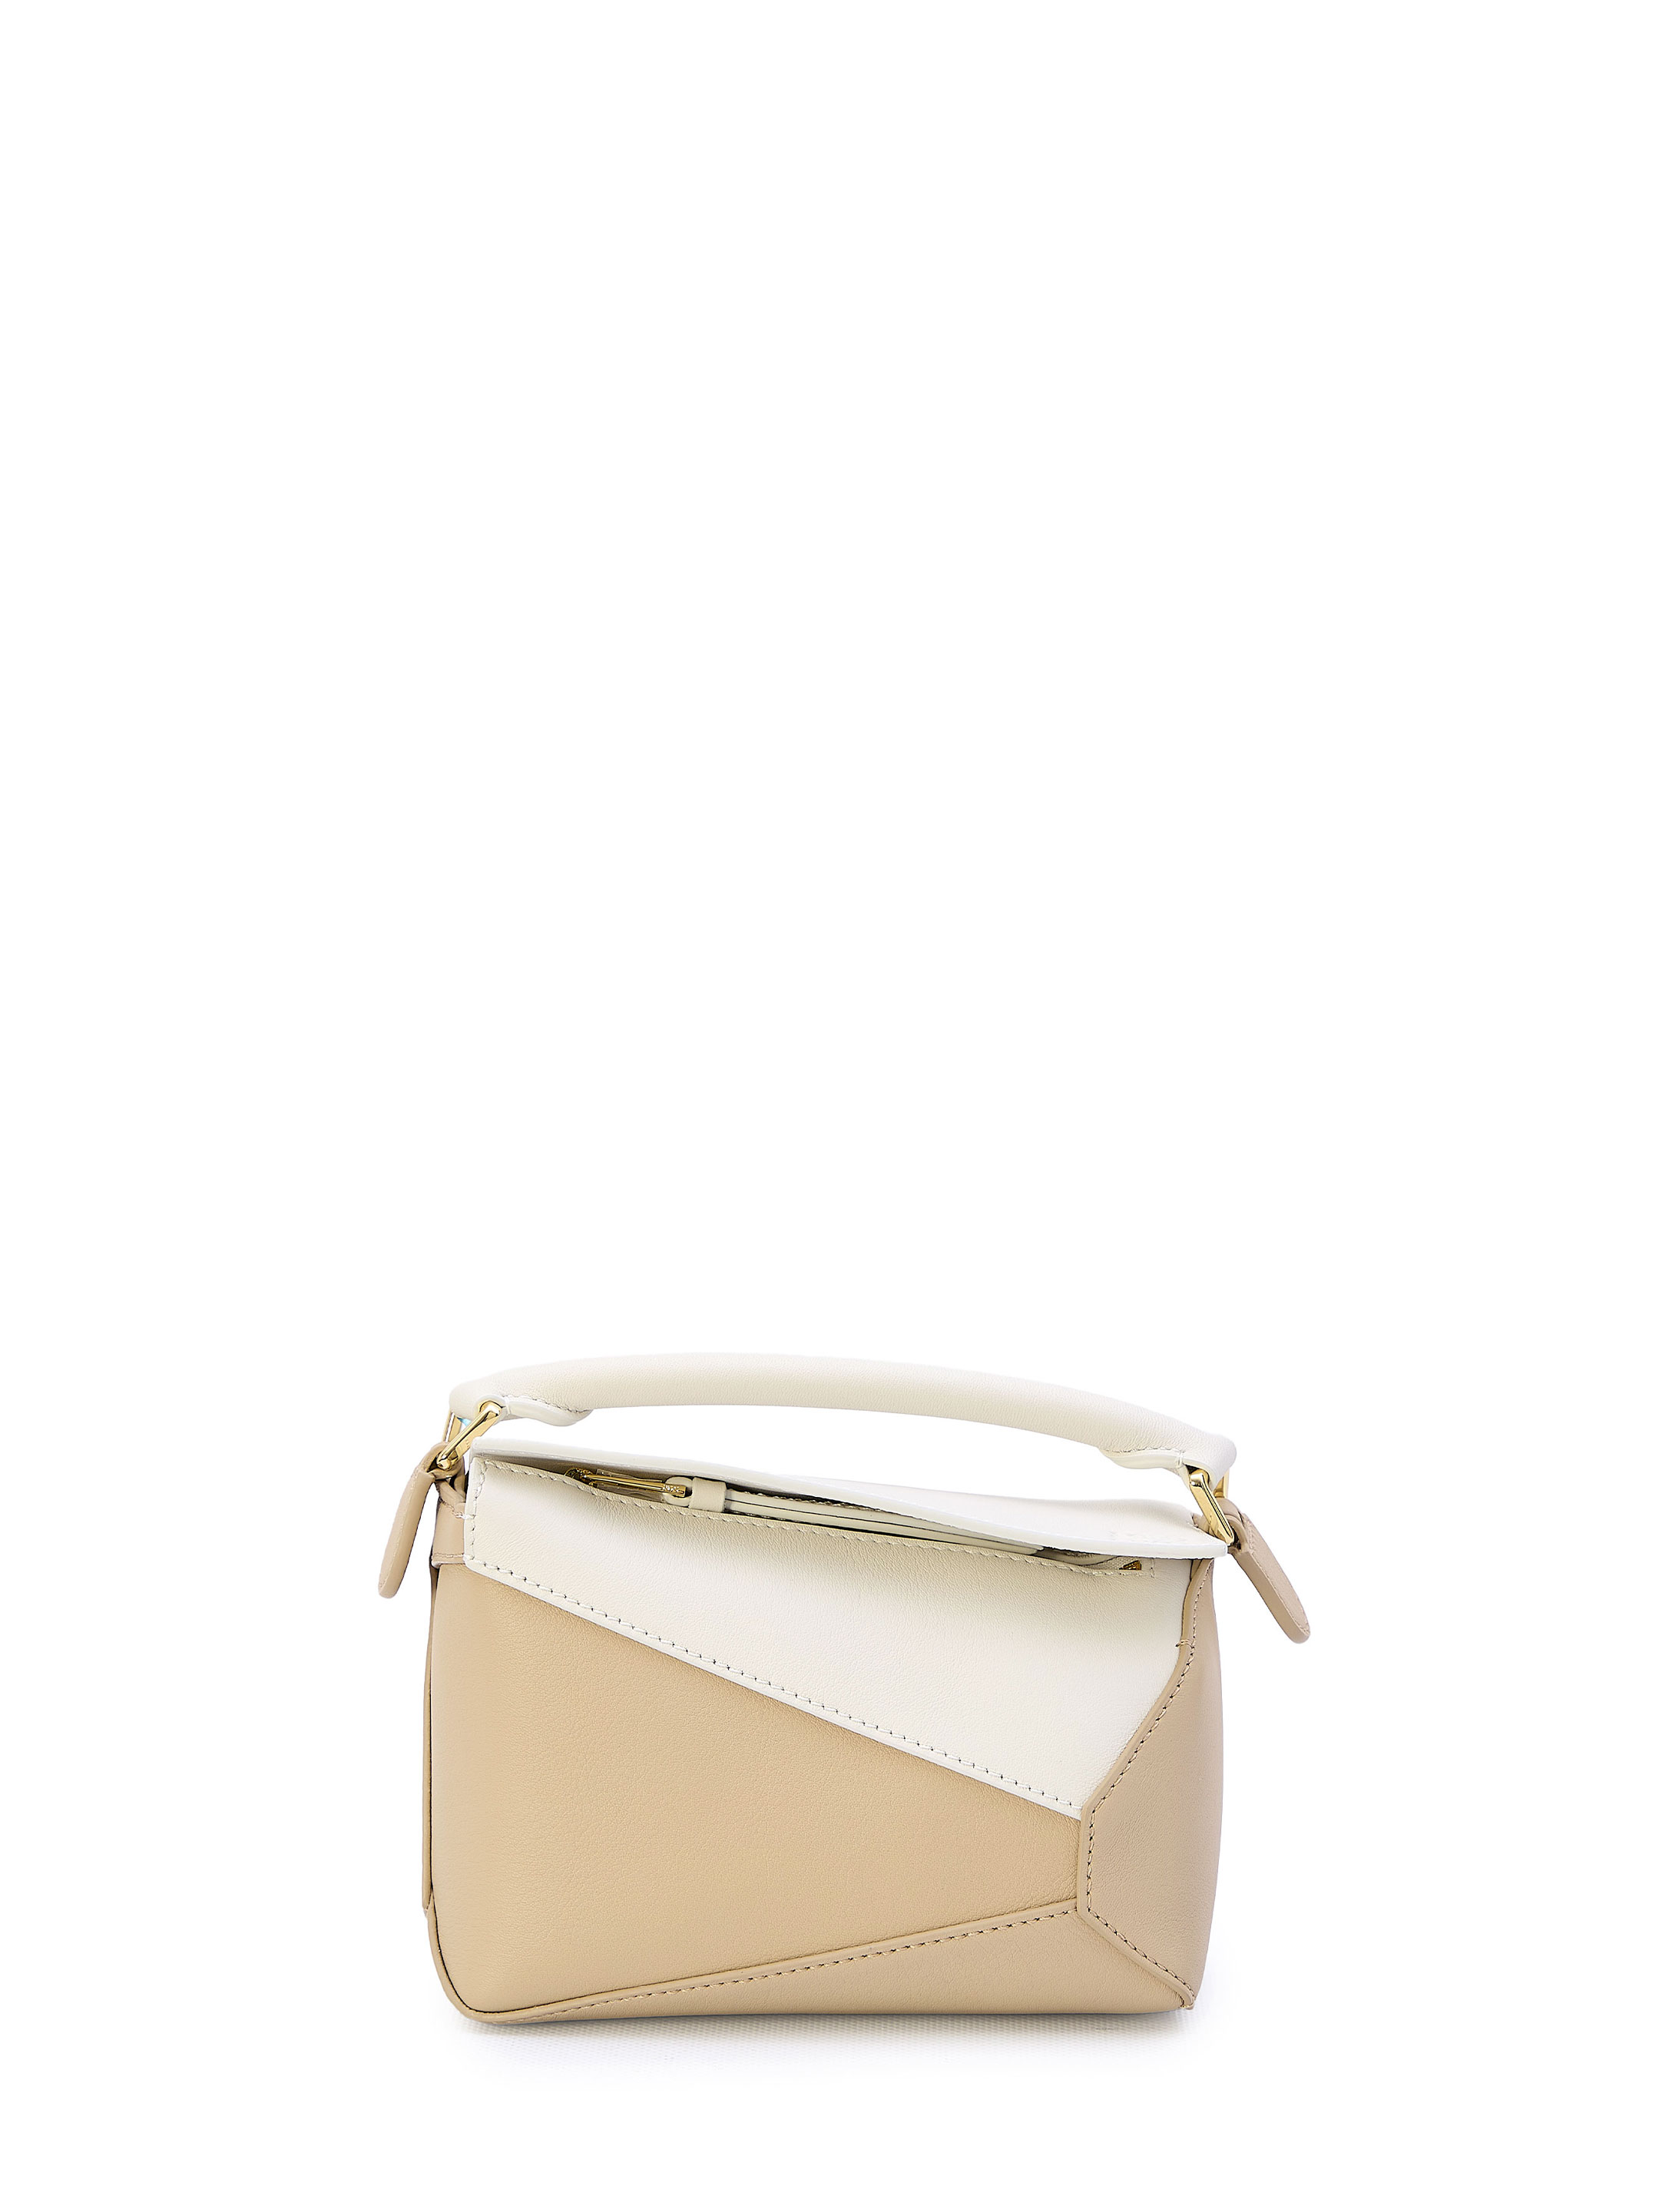 Сумка Loewe Mini Puzzle, белый дорожная сумка с одним отделением и съемным ремнем blackwood albion black